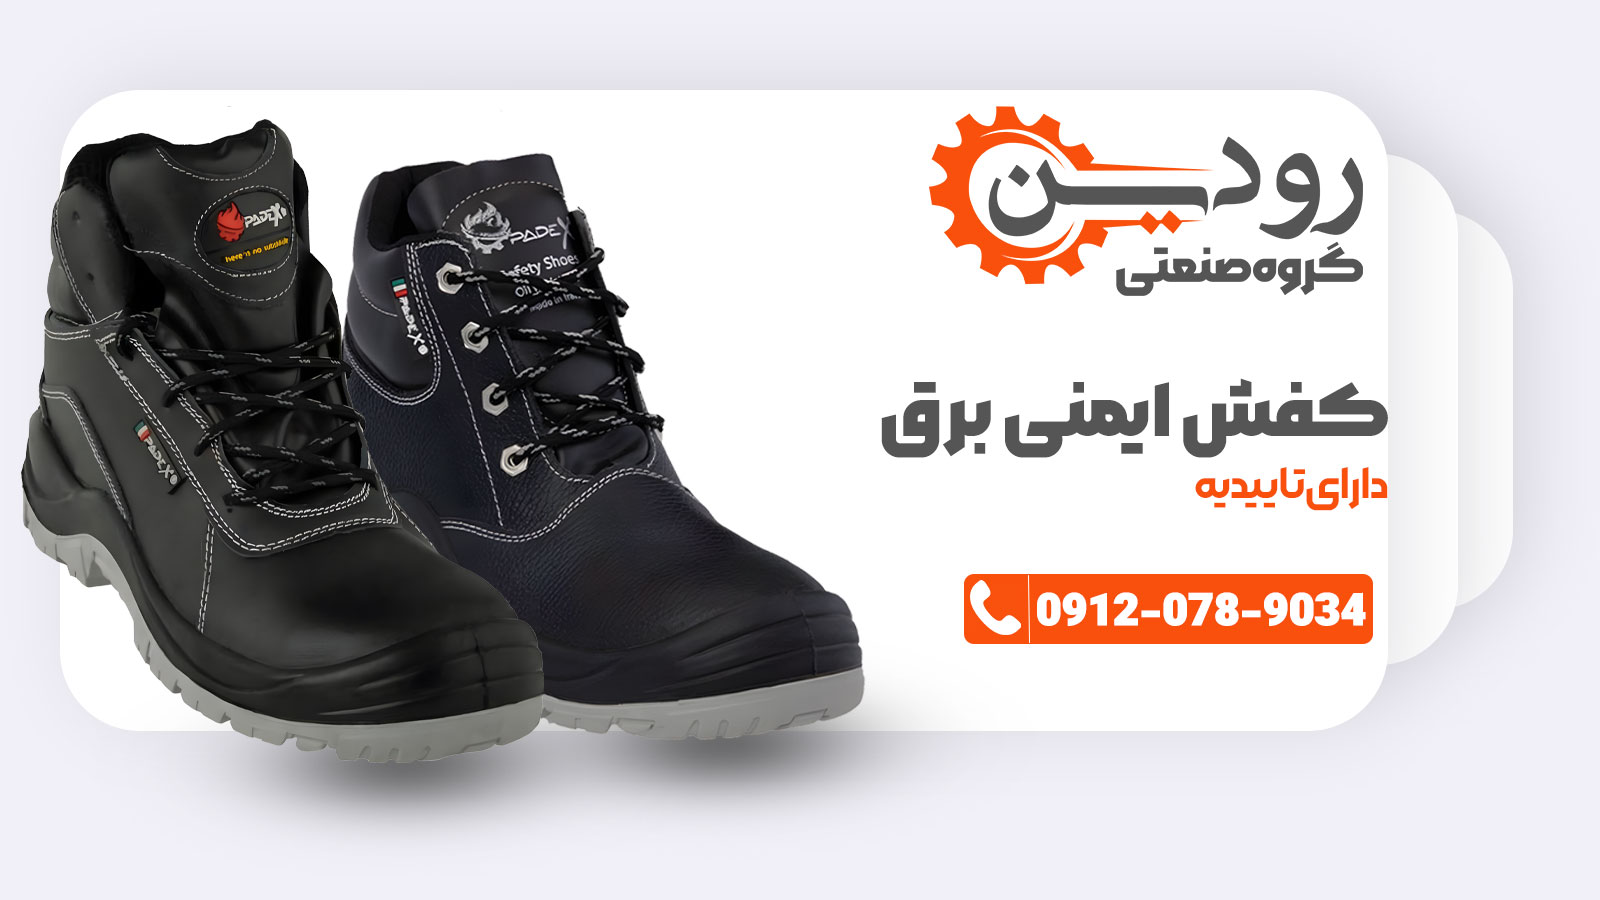 کفش ایمنی عایق برق شرکت رودین دارای تاییدیه و استاندارد ملی ایران میباشد.